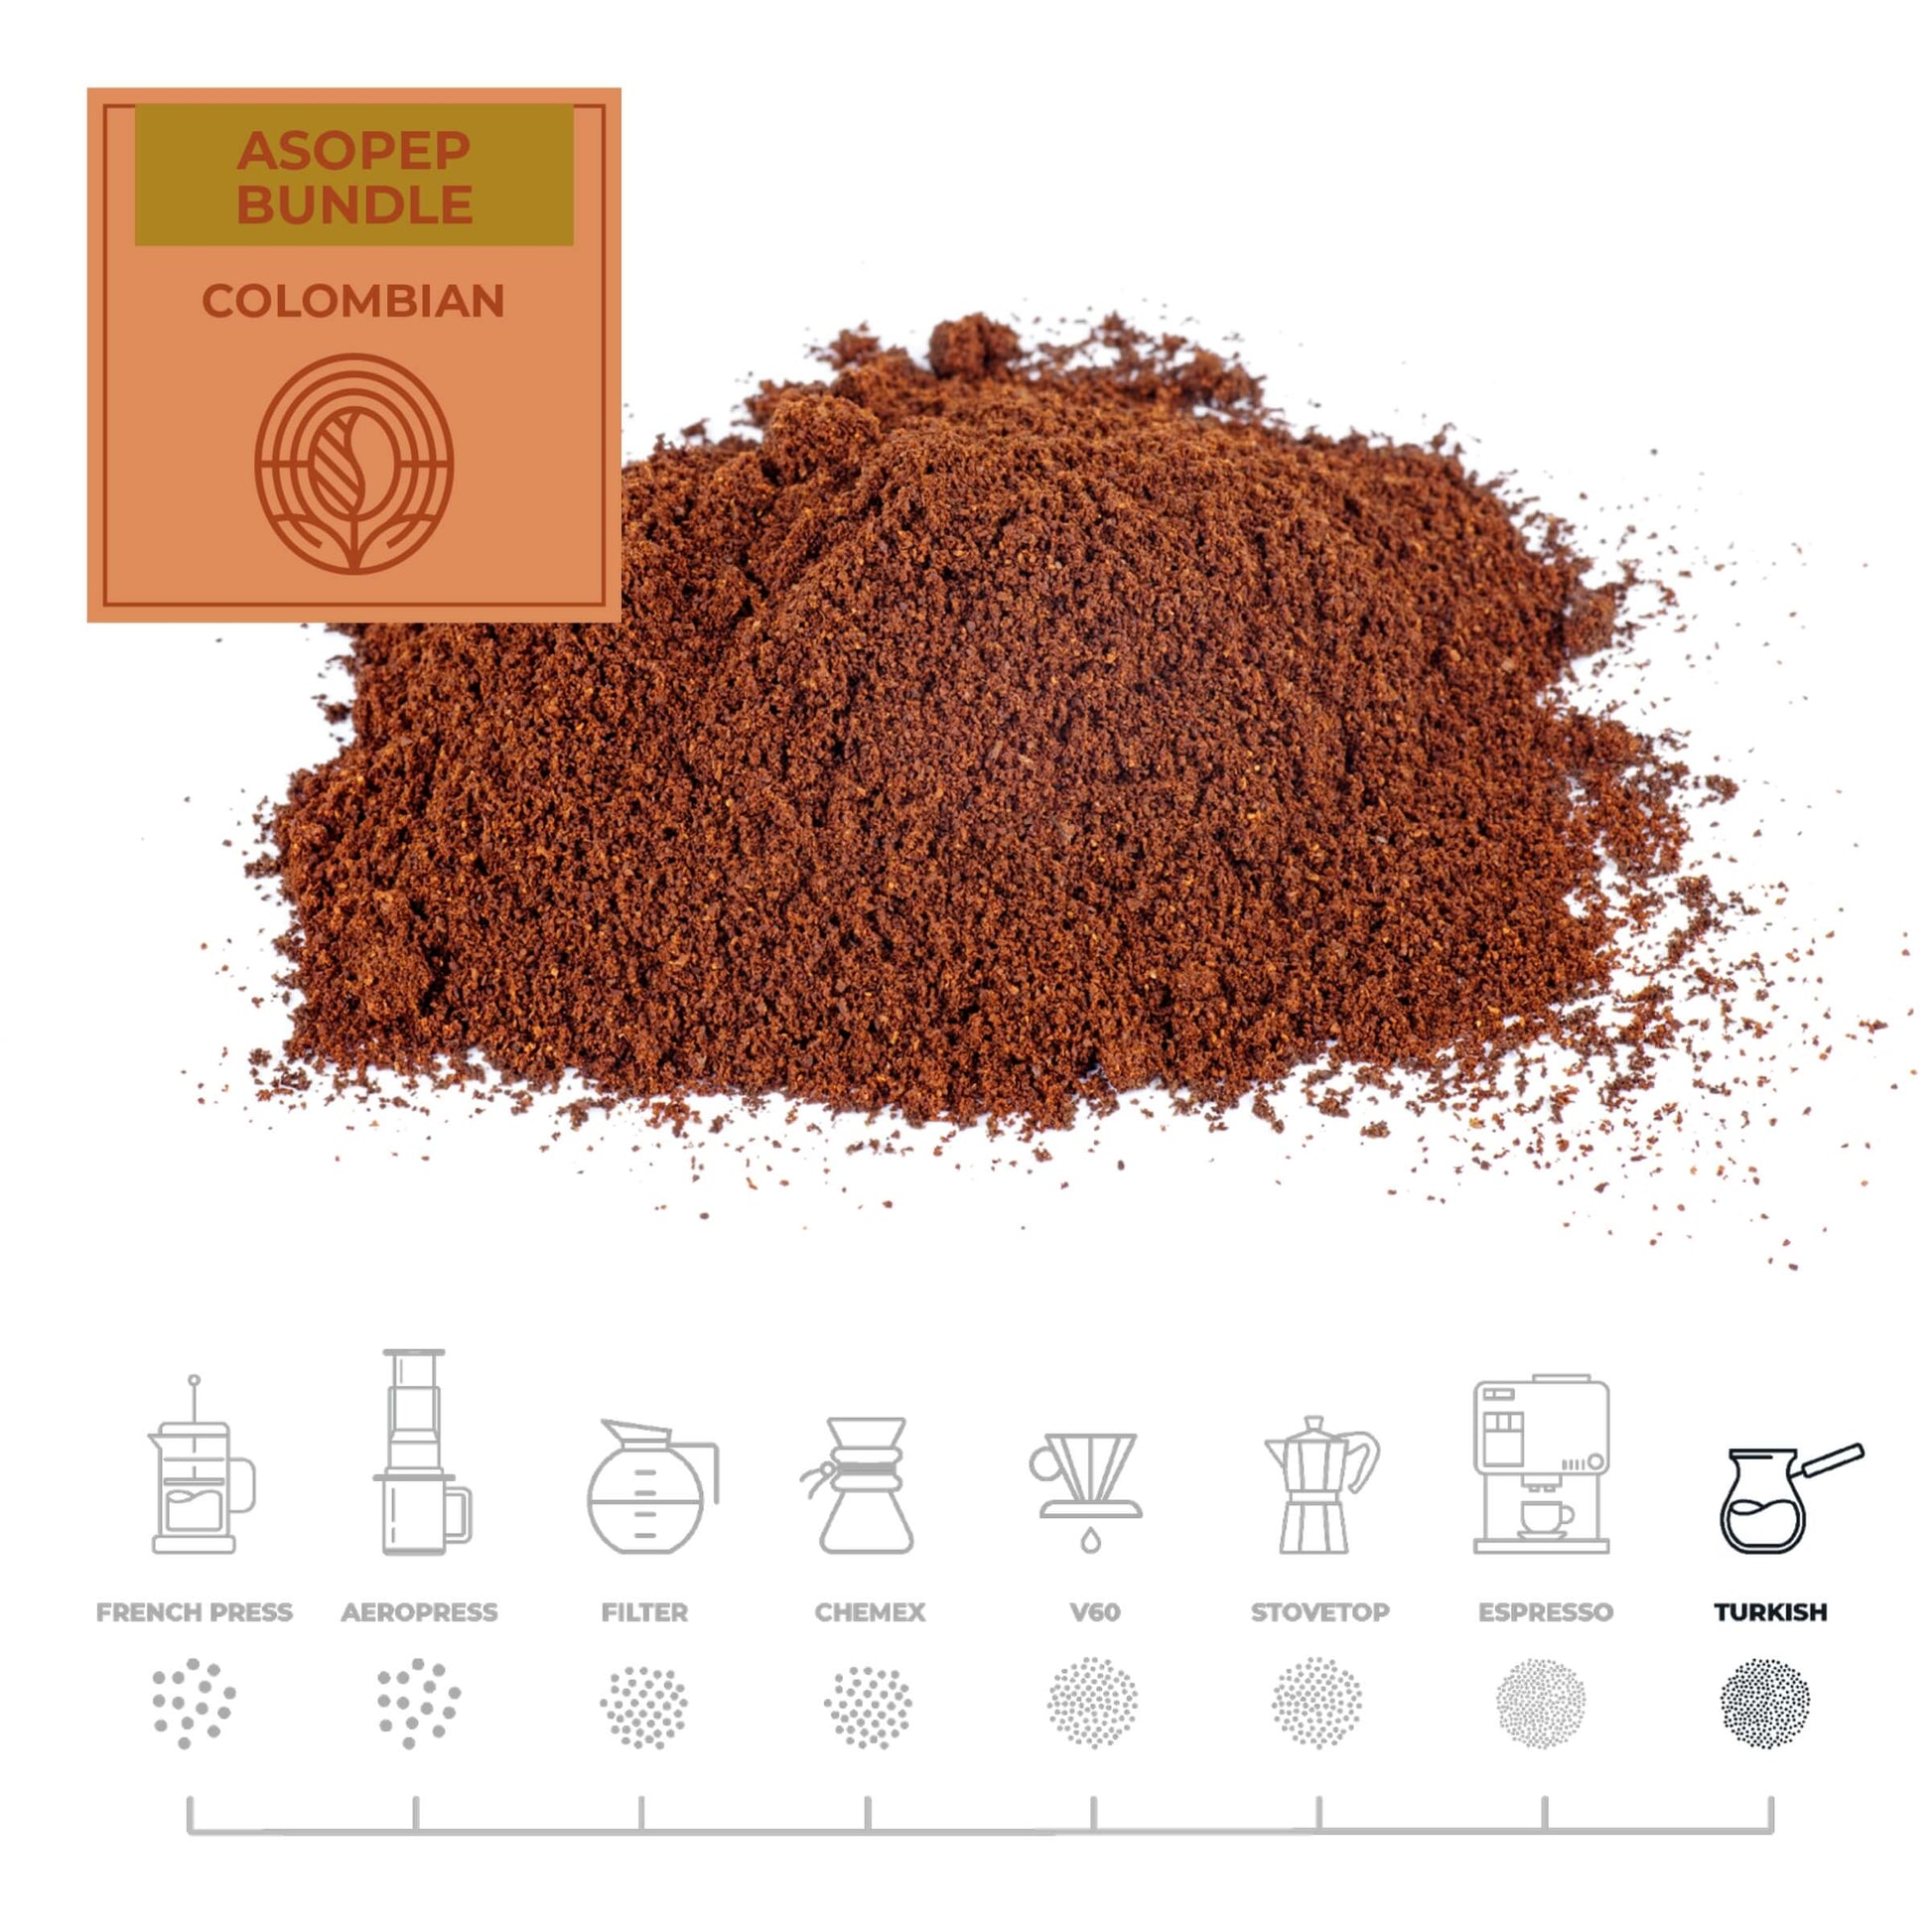 Colombian-Asopep-Coffee-Bundle-Turkish_RAW-Coffee-Company